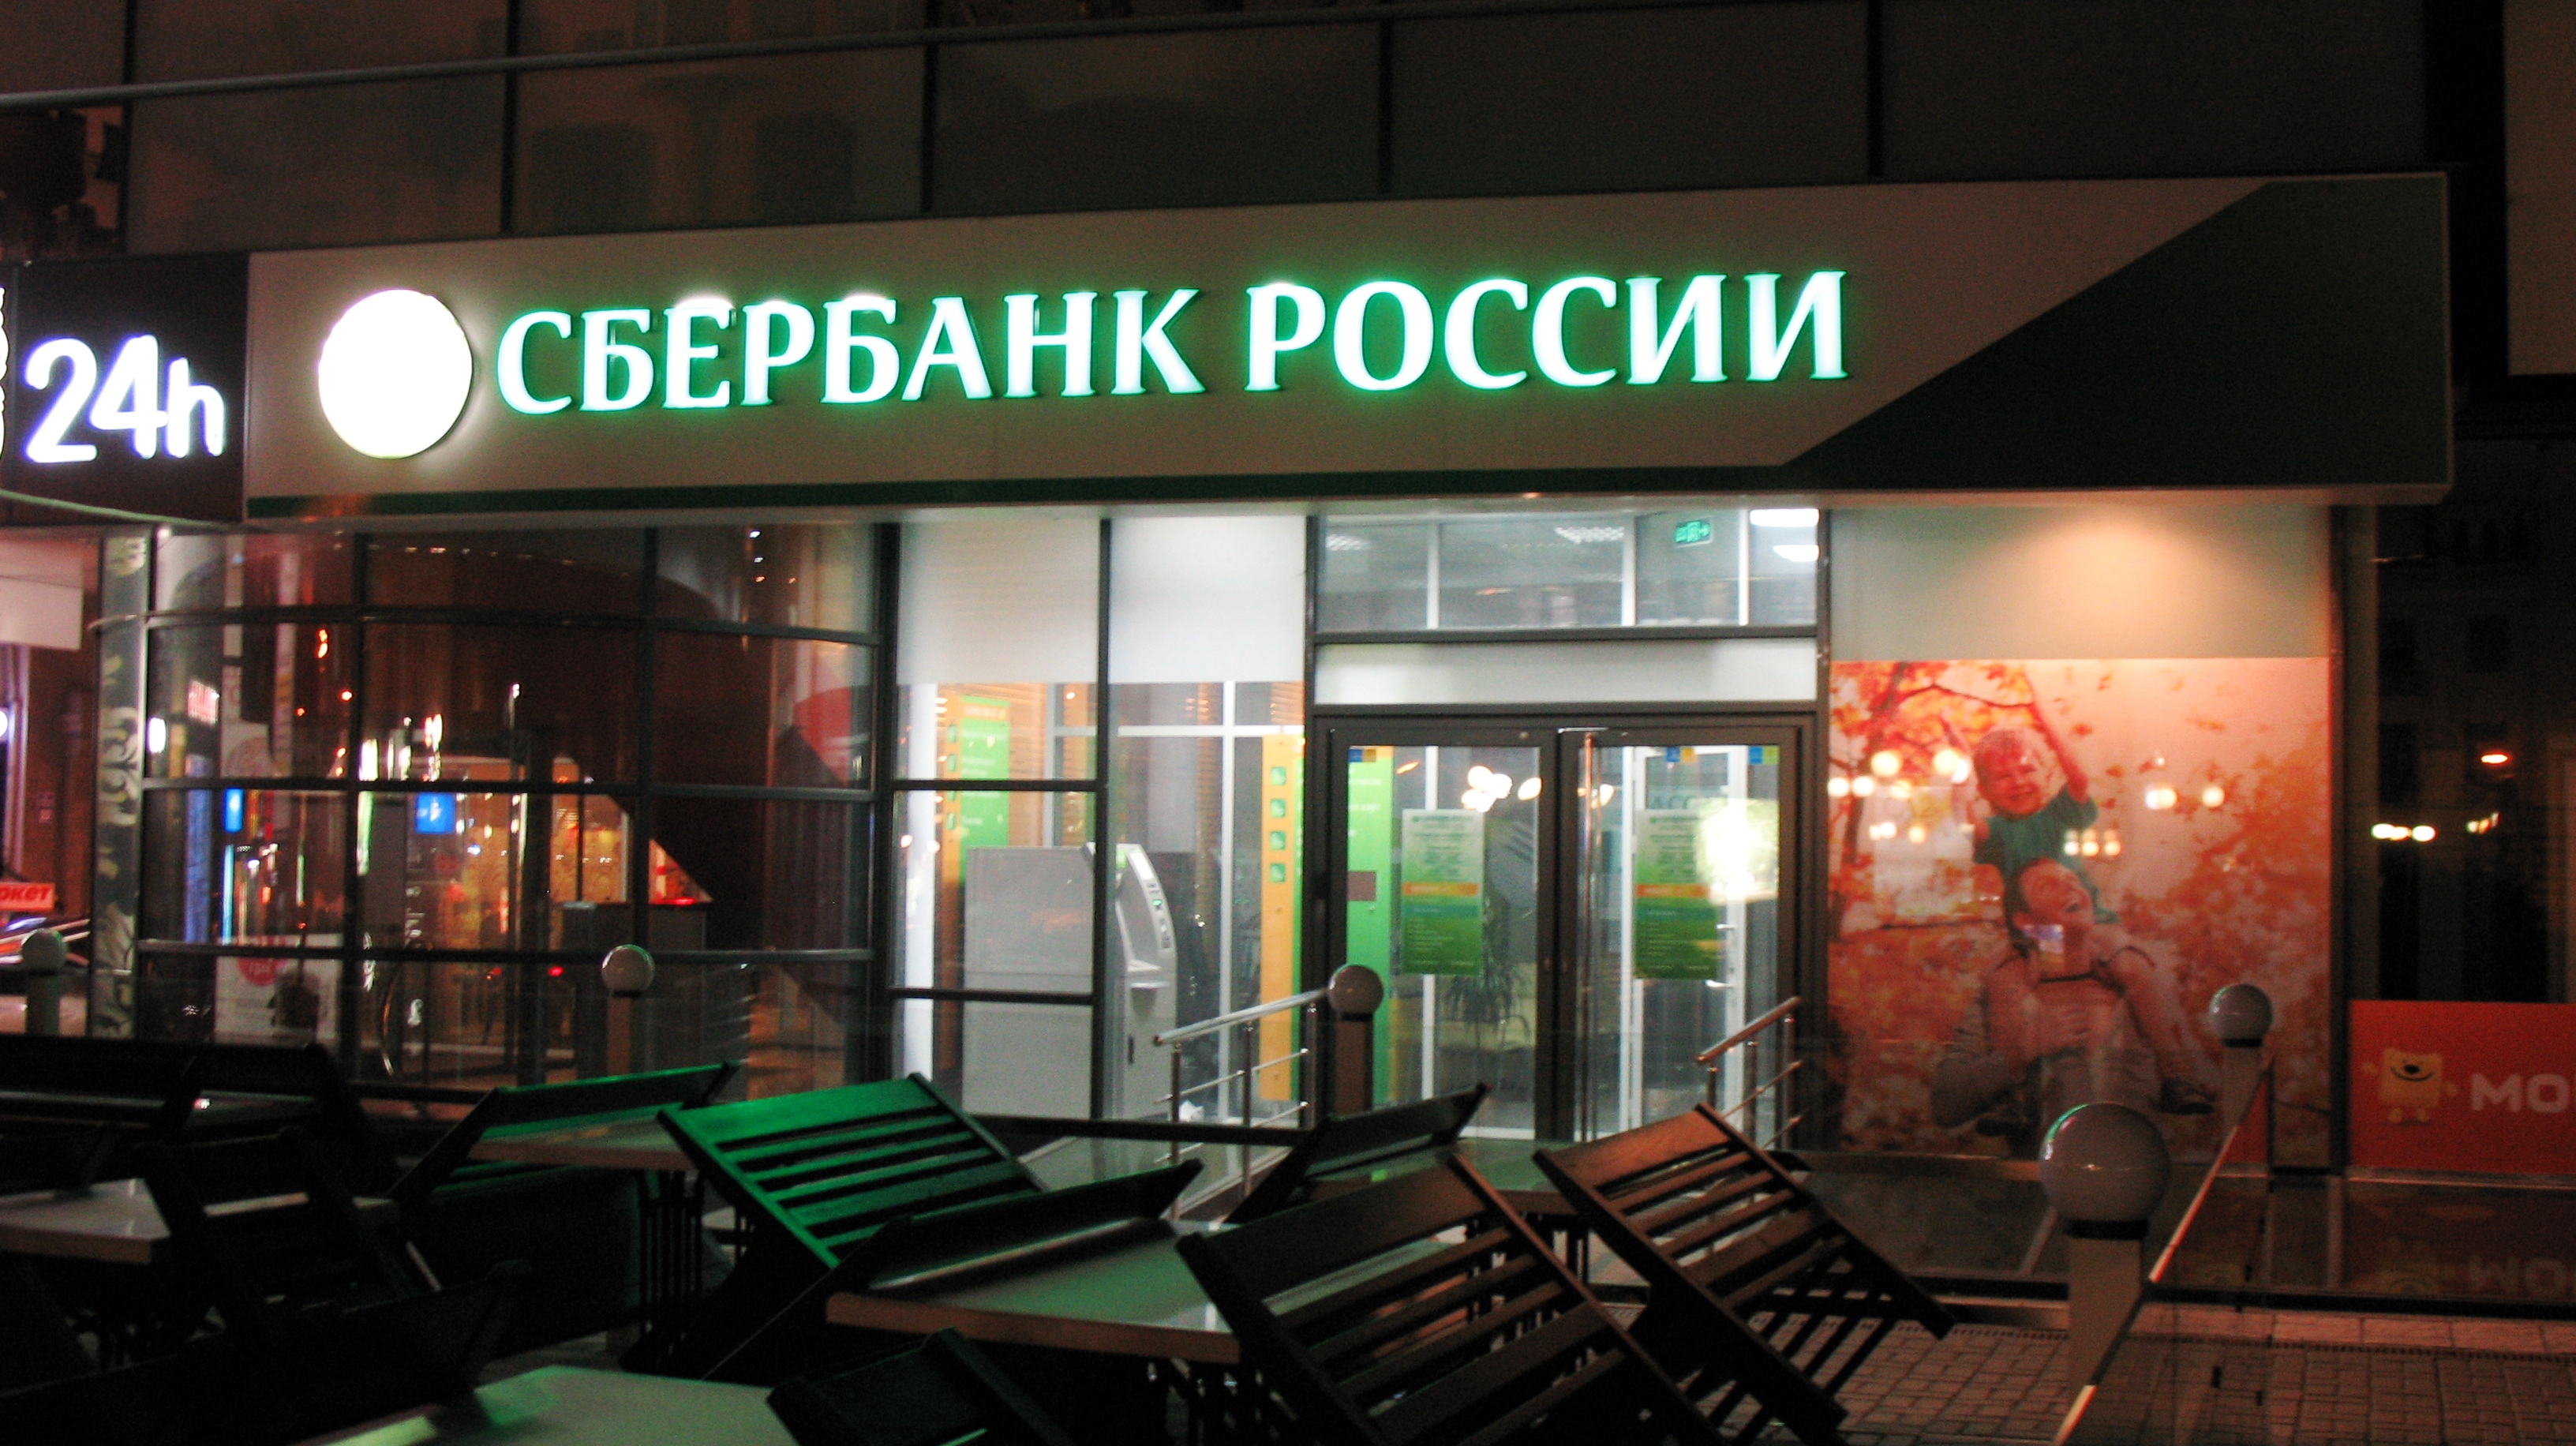 Сбербанк не собирается открывать отделения в Крыму из-за санкций